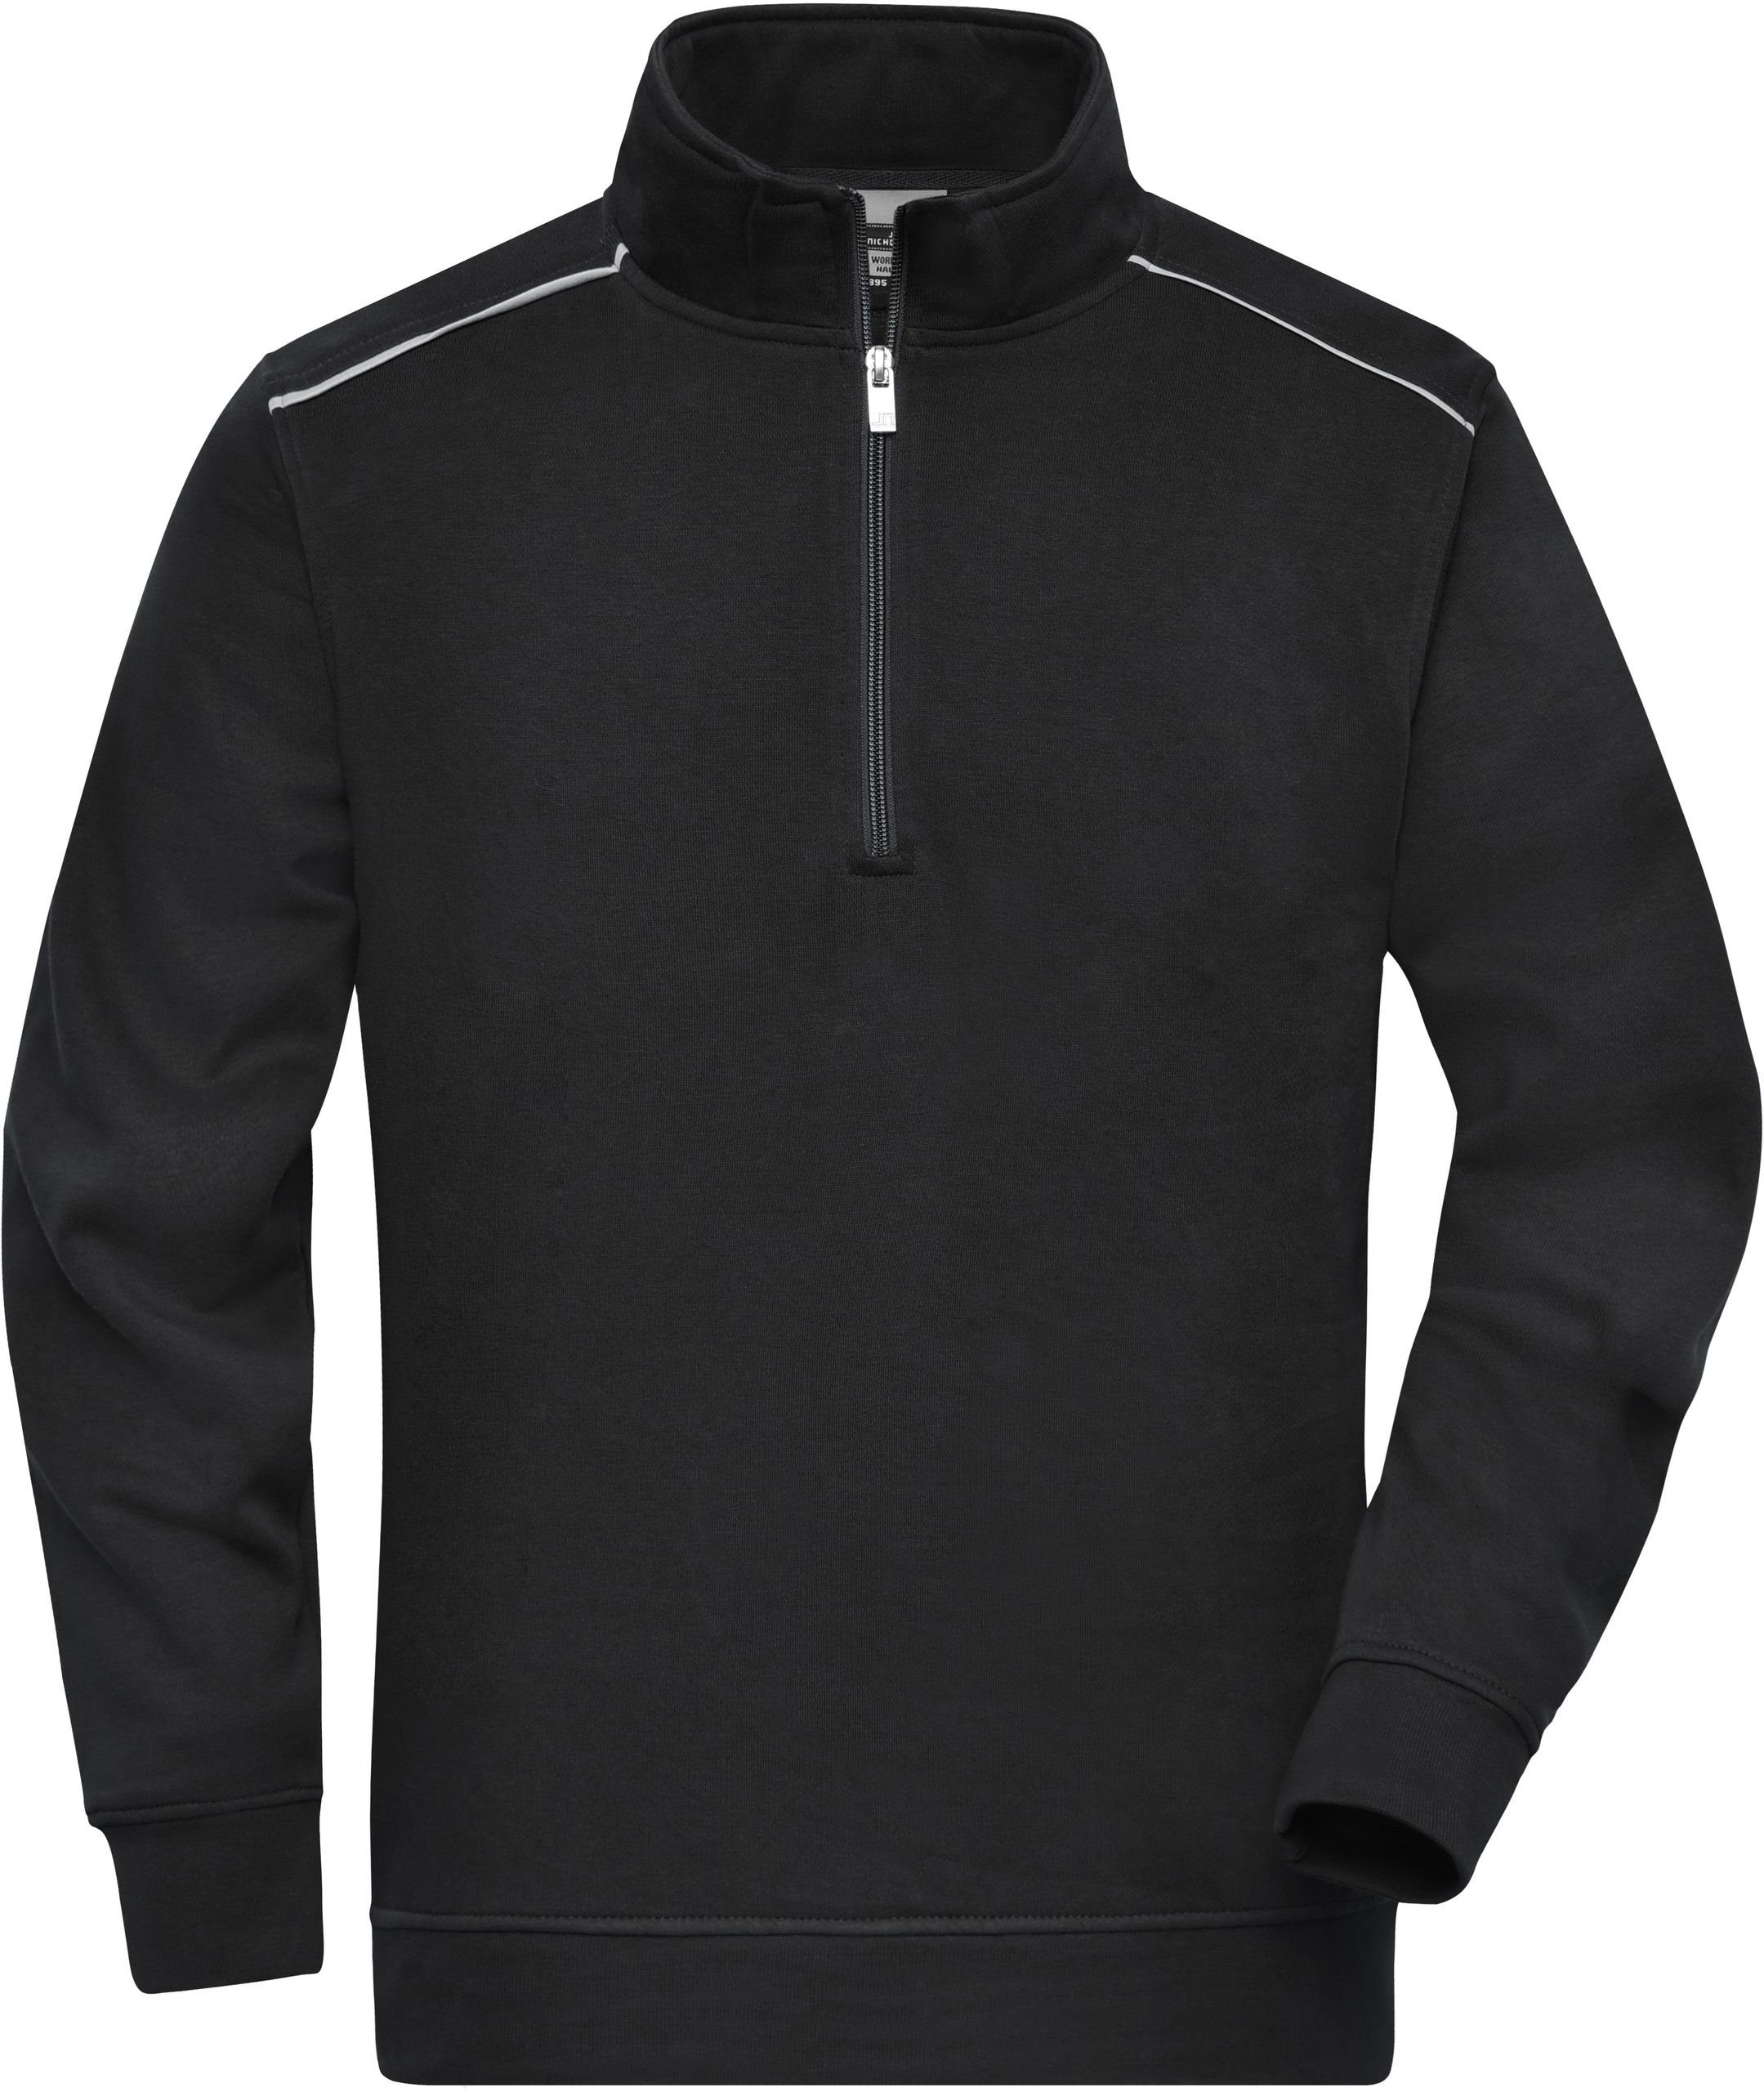 James & Nicholson Hoodie Workwear Halfzip Sweatshirt auch in großen Größen FaS50895 Black